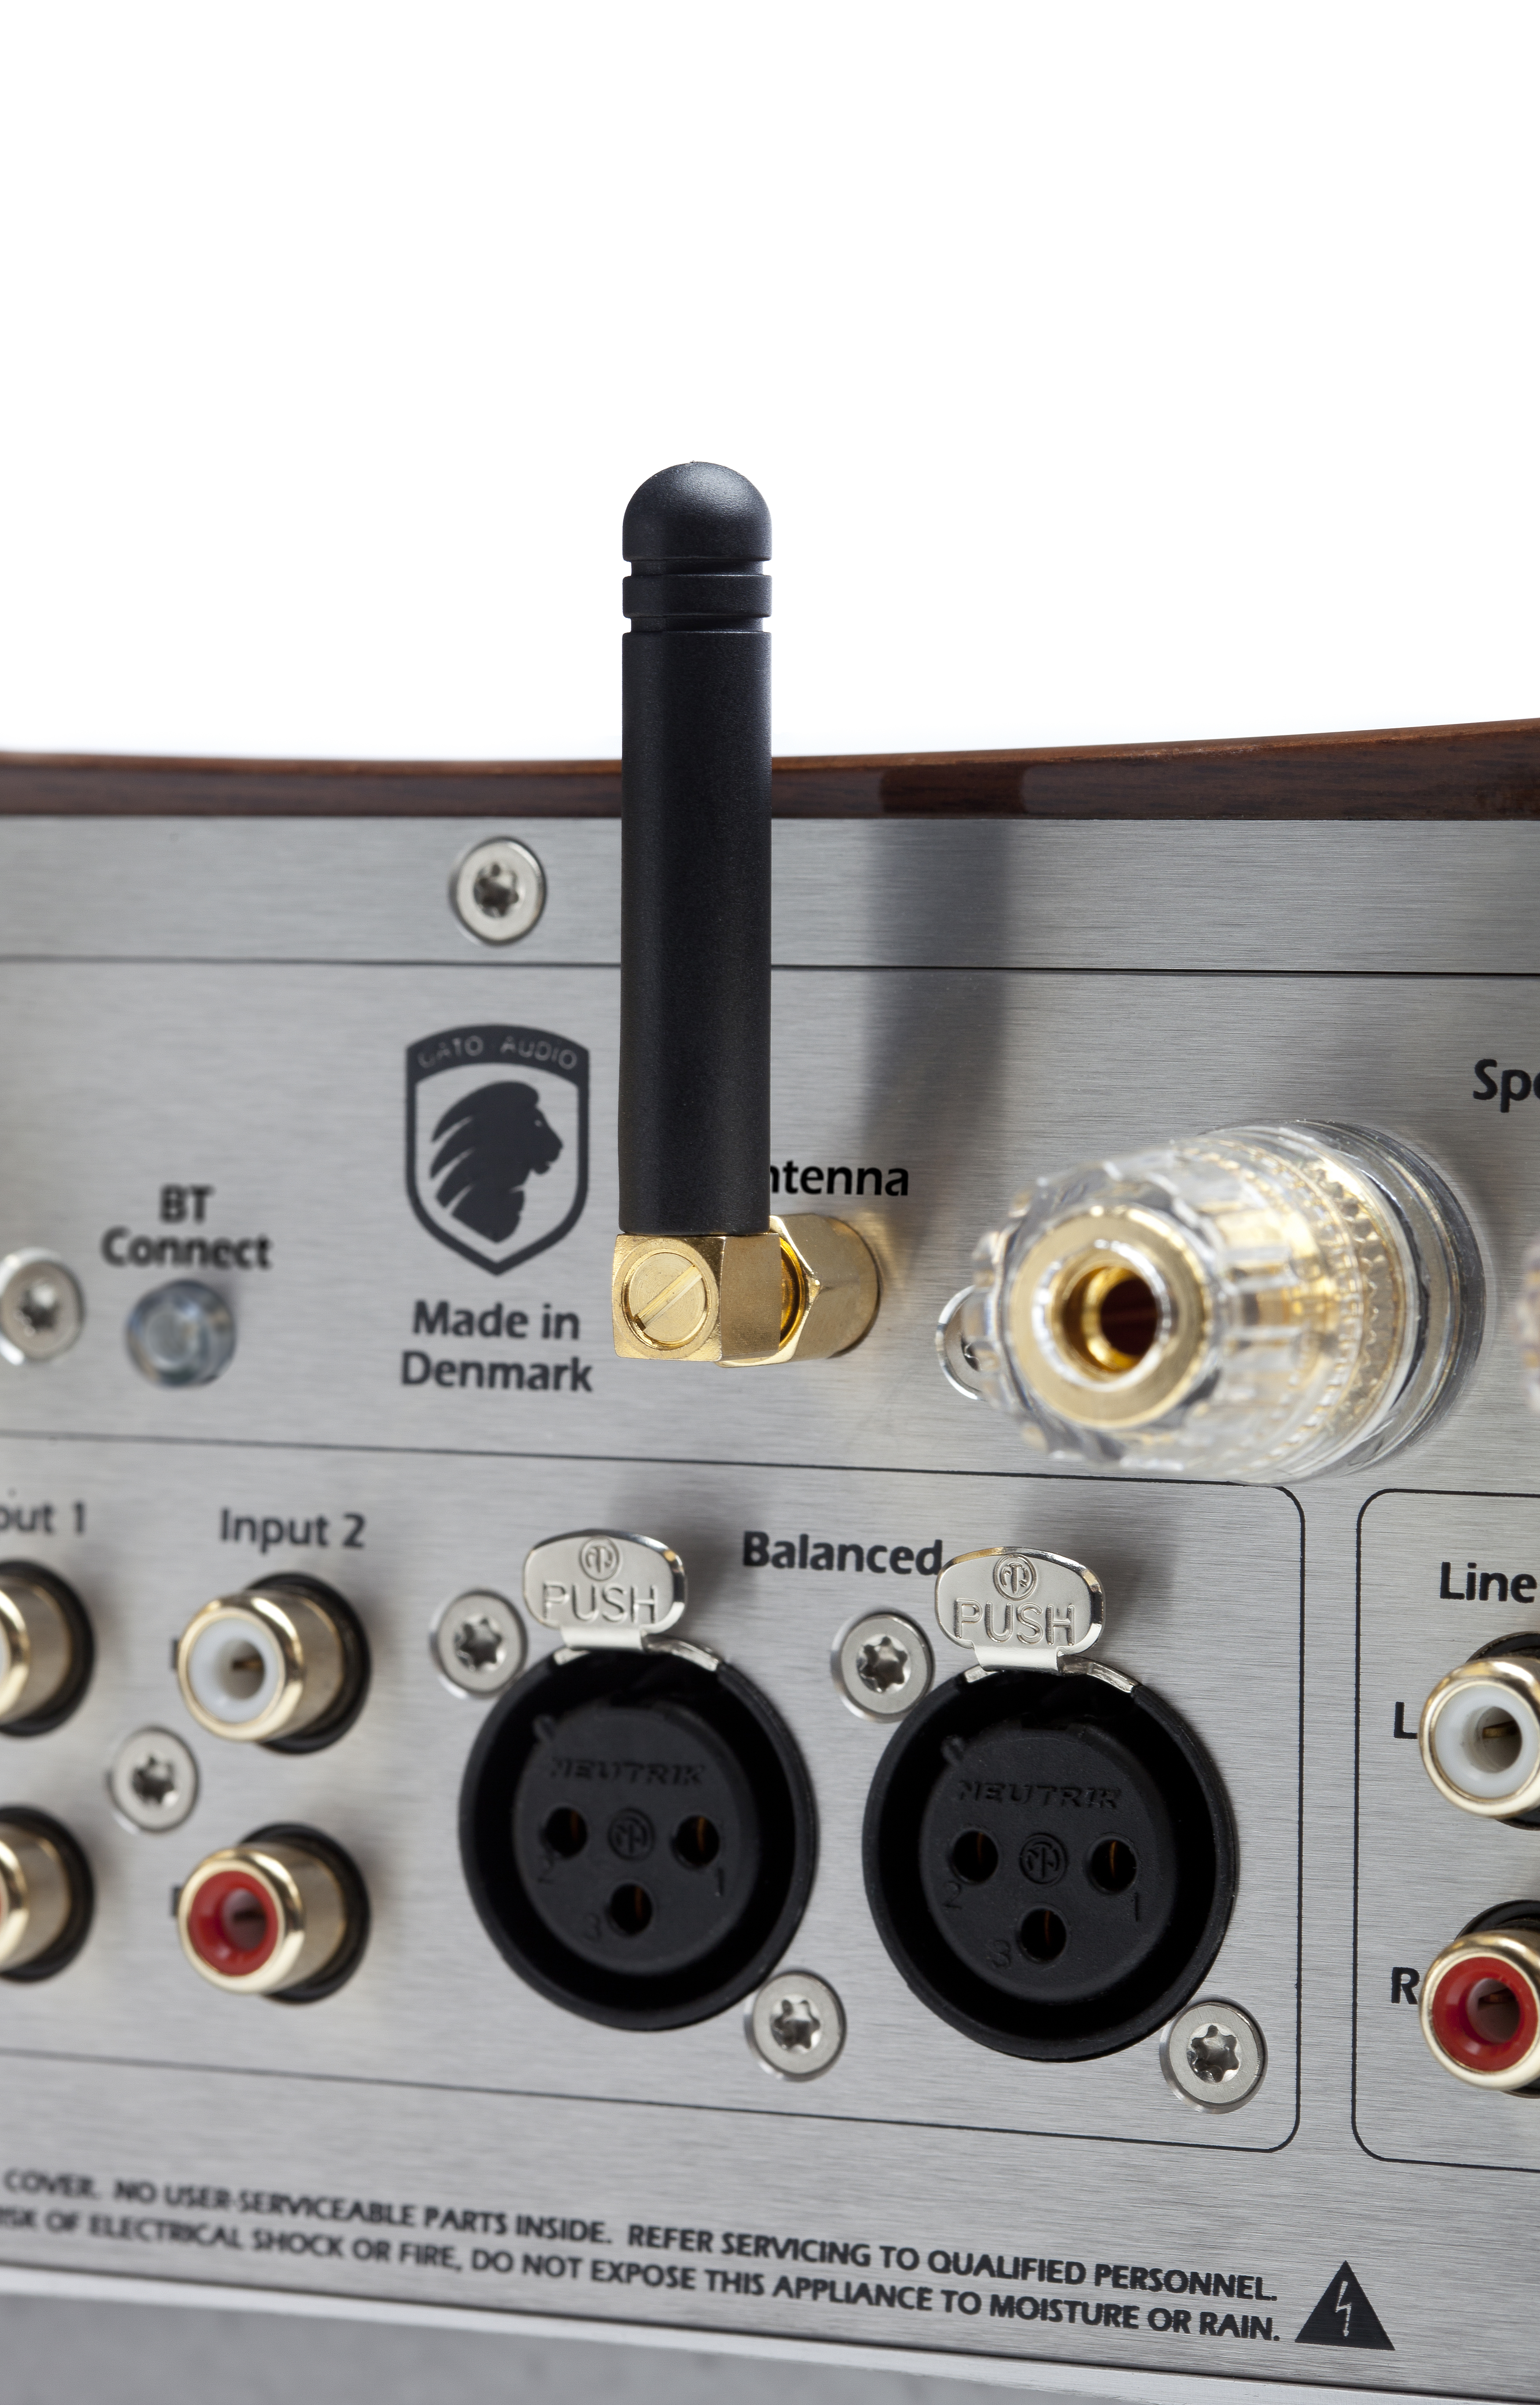 Gato Audio DIA-400S NPM incl. DAC und Streaming